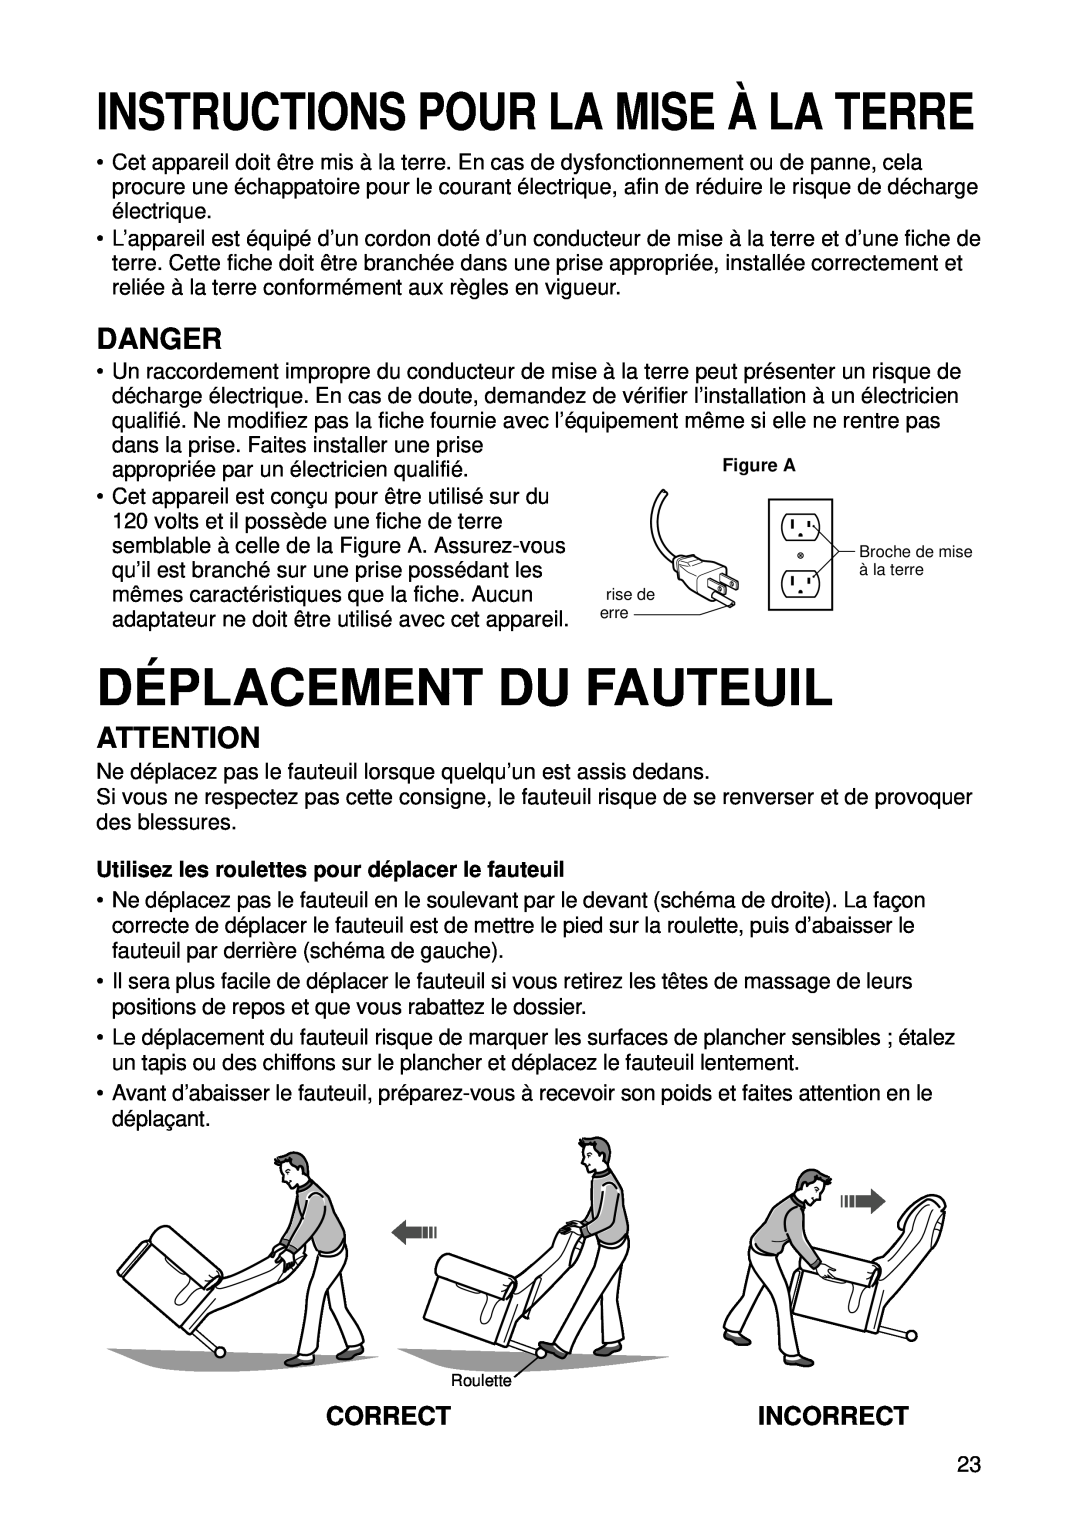 Panasonic EP1015 Dé Placement Du Fauteuil, Incorrect, Utilisez les roulettes pour dé placer le fauteuil, Danger, Correct 